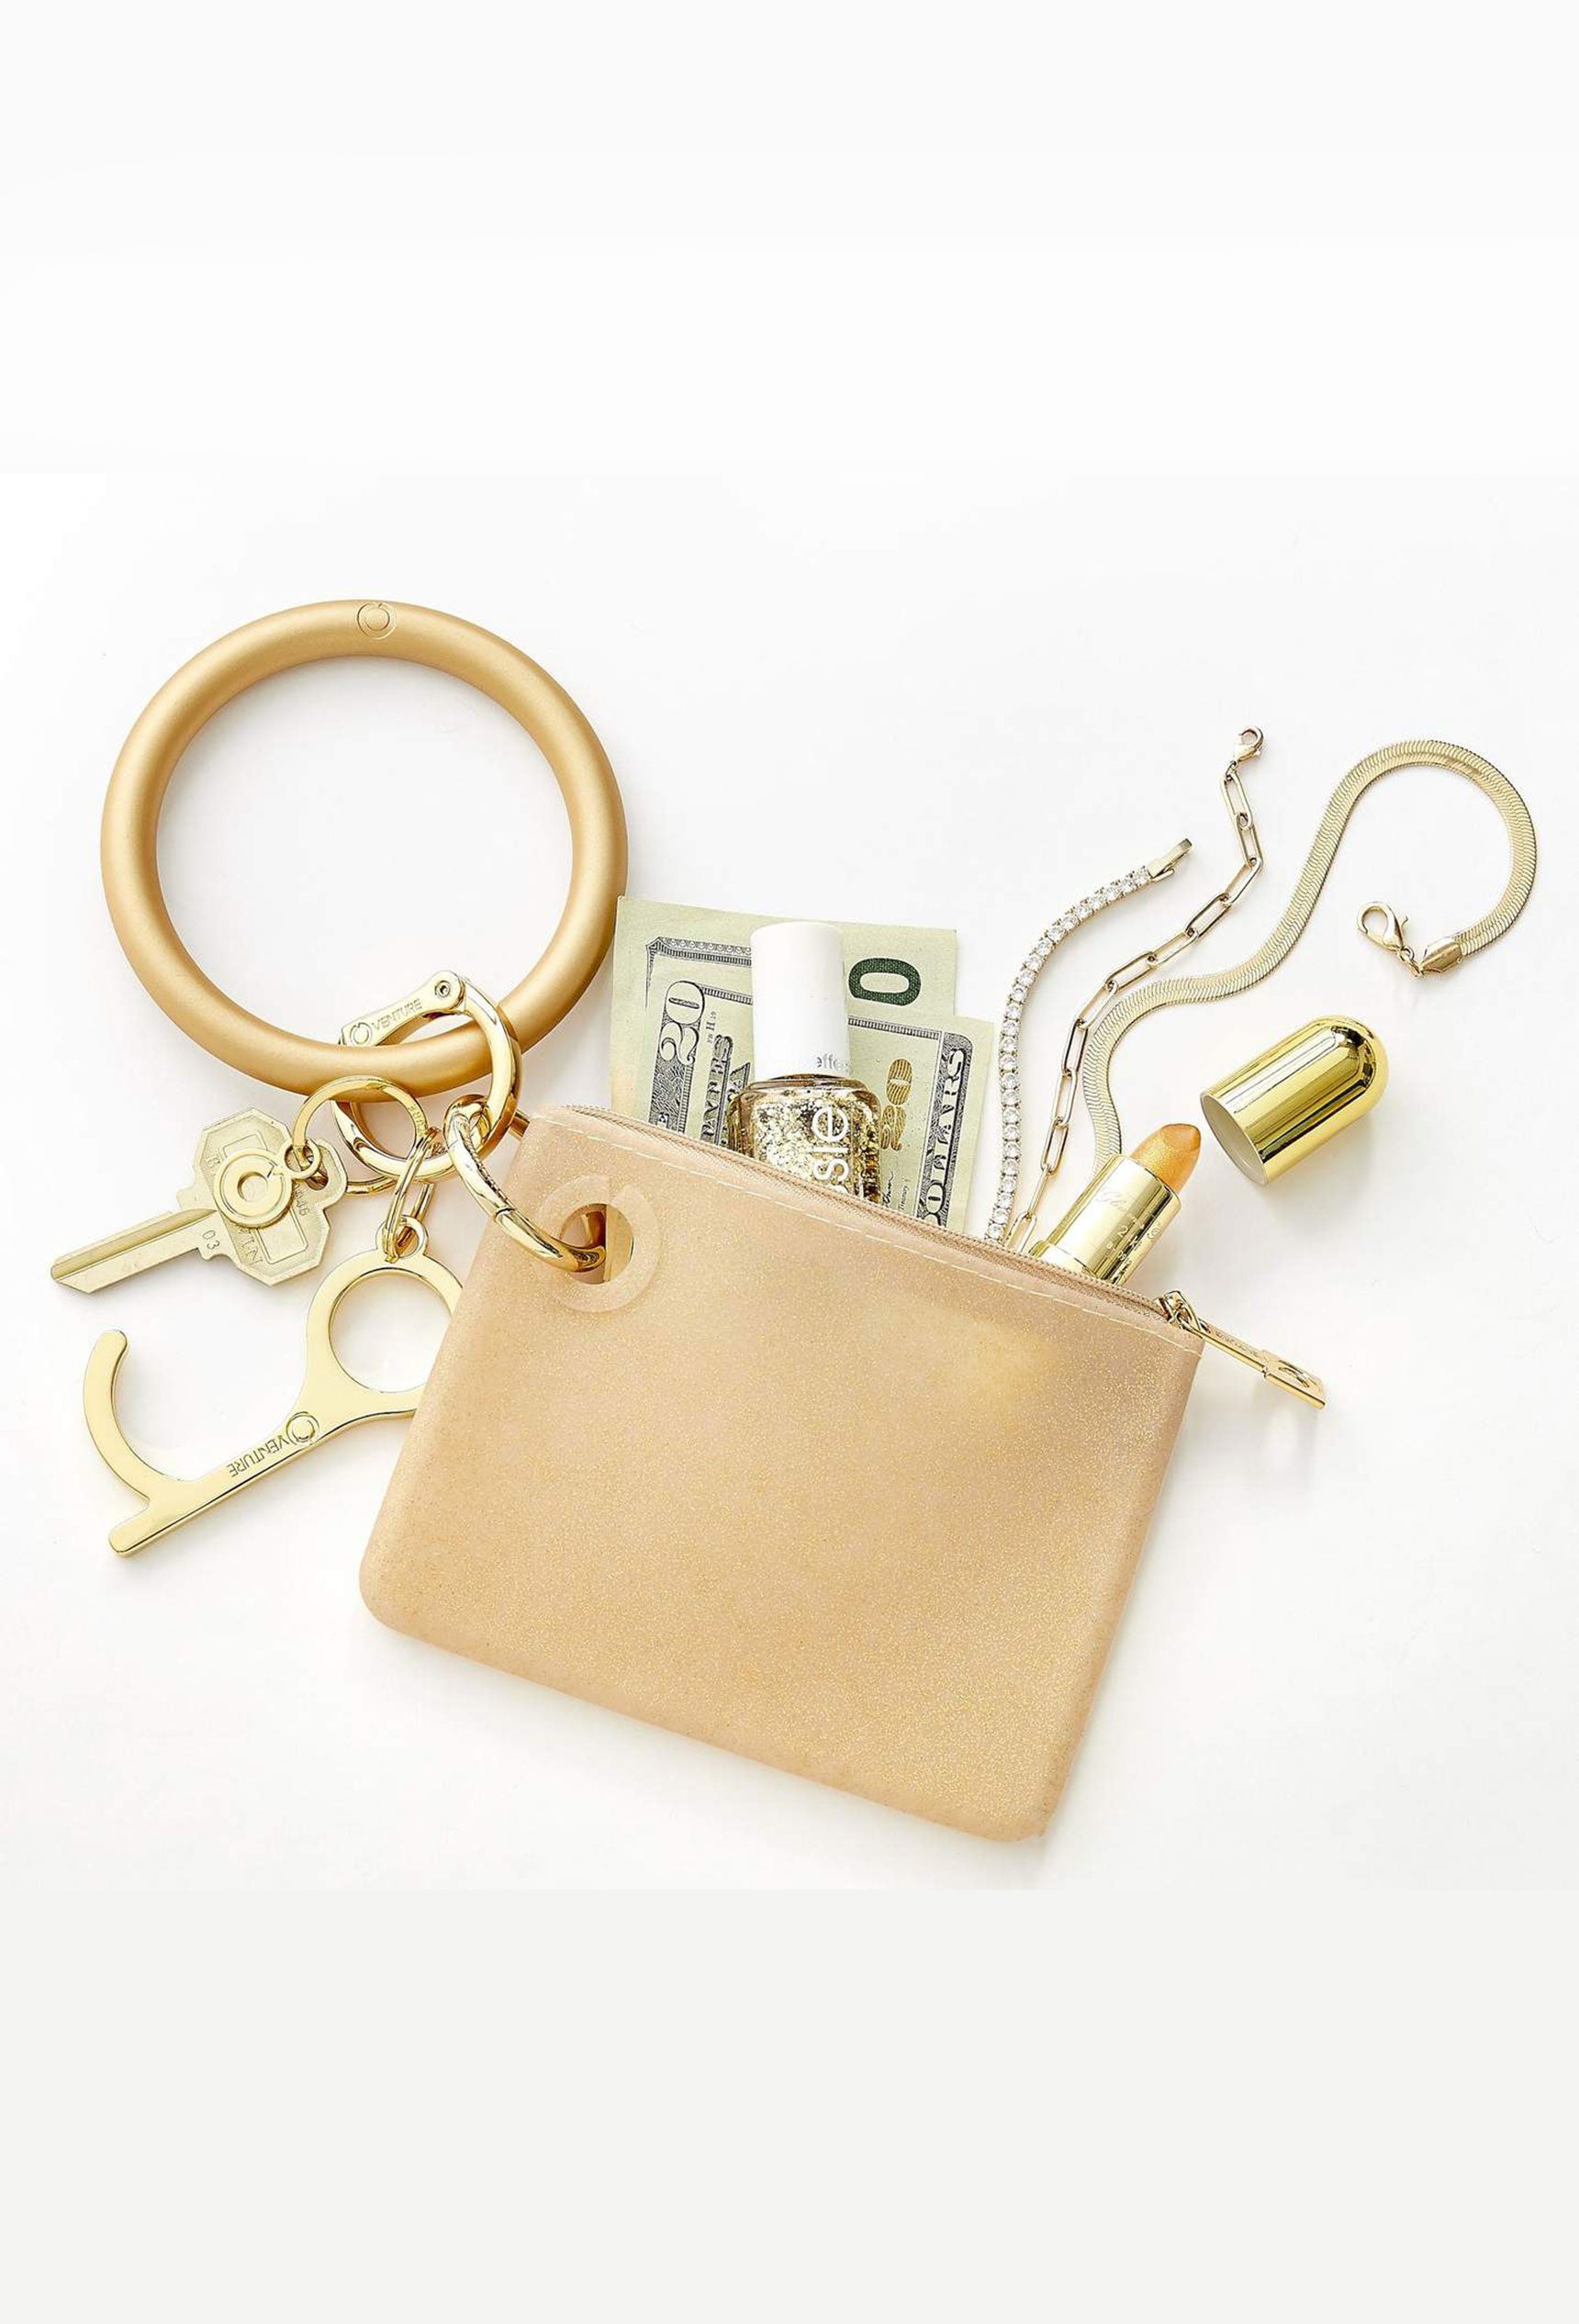 O-Venture Mini Silicone Pouch in Gold Rush Confetti, gold mini silicone id key pouch 